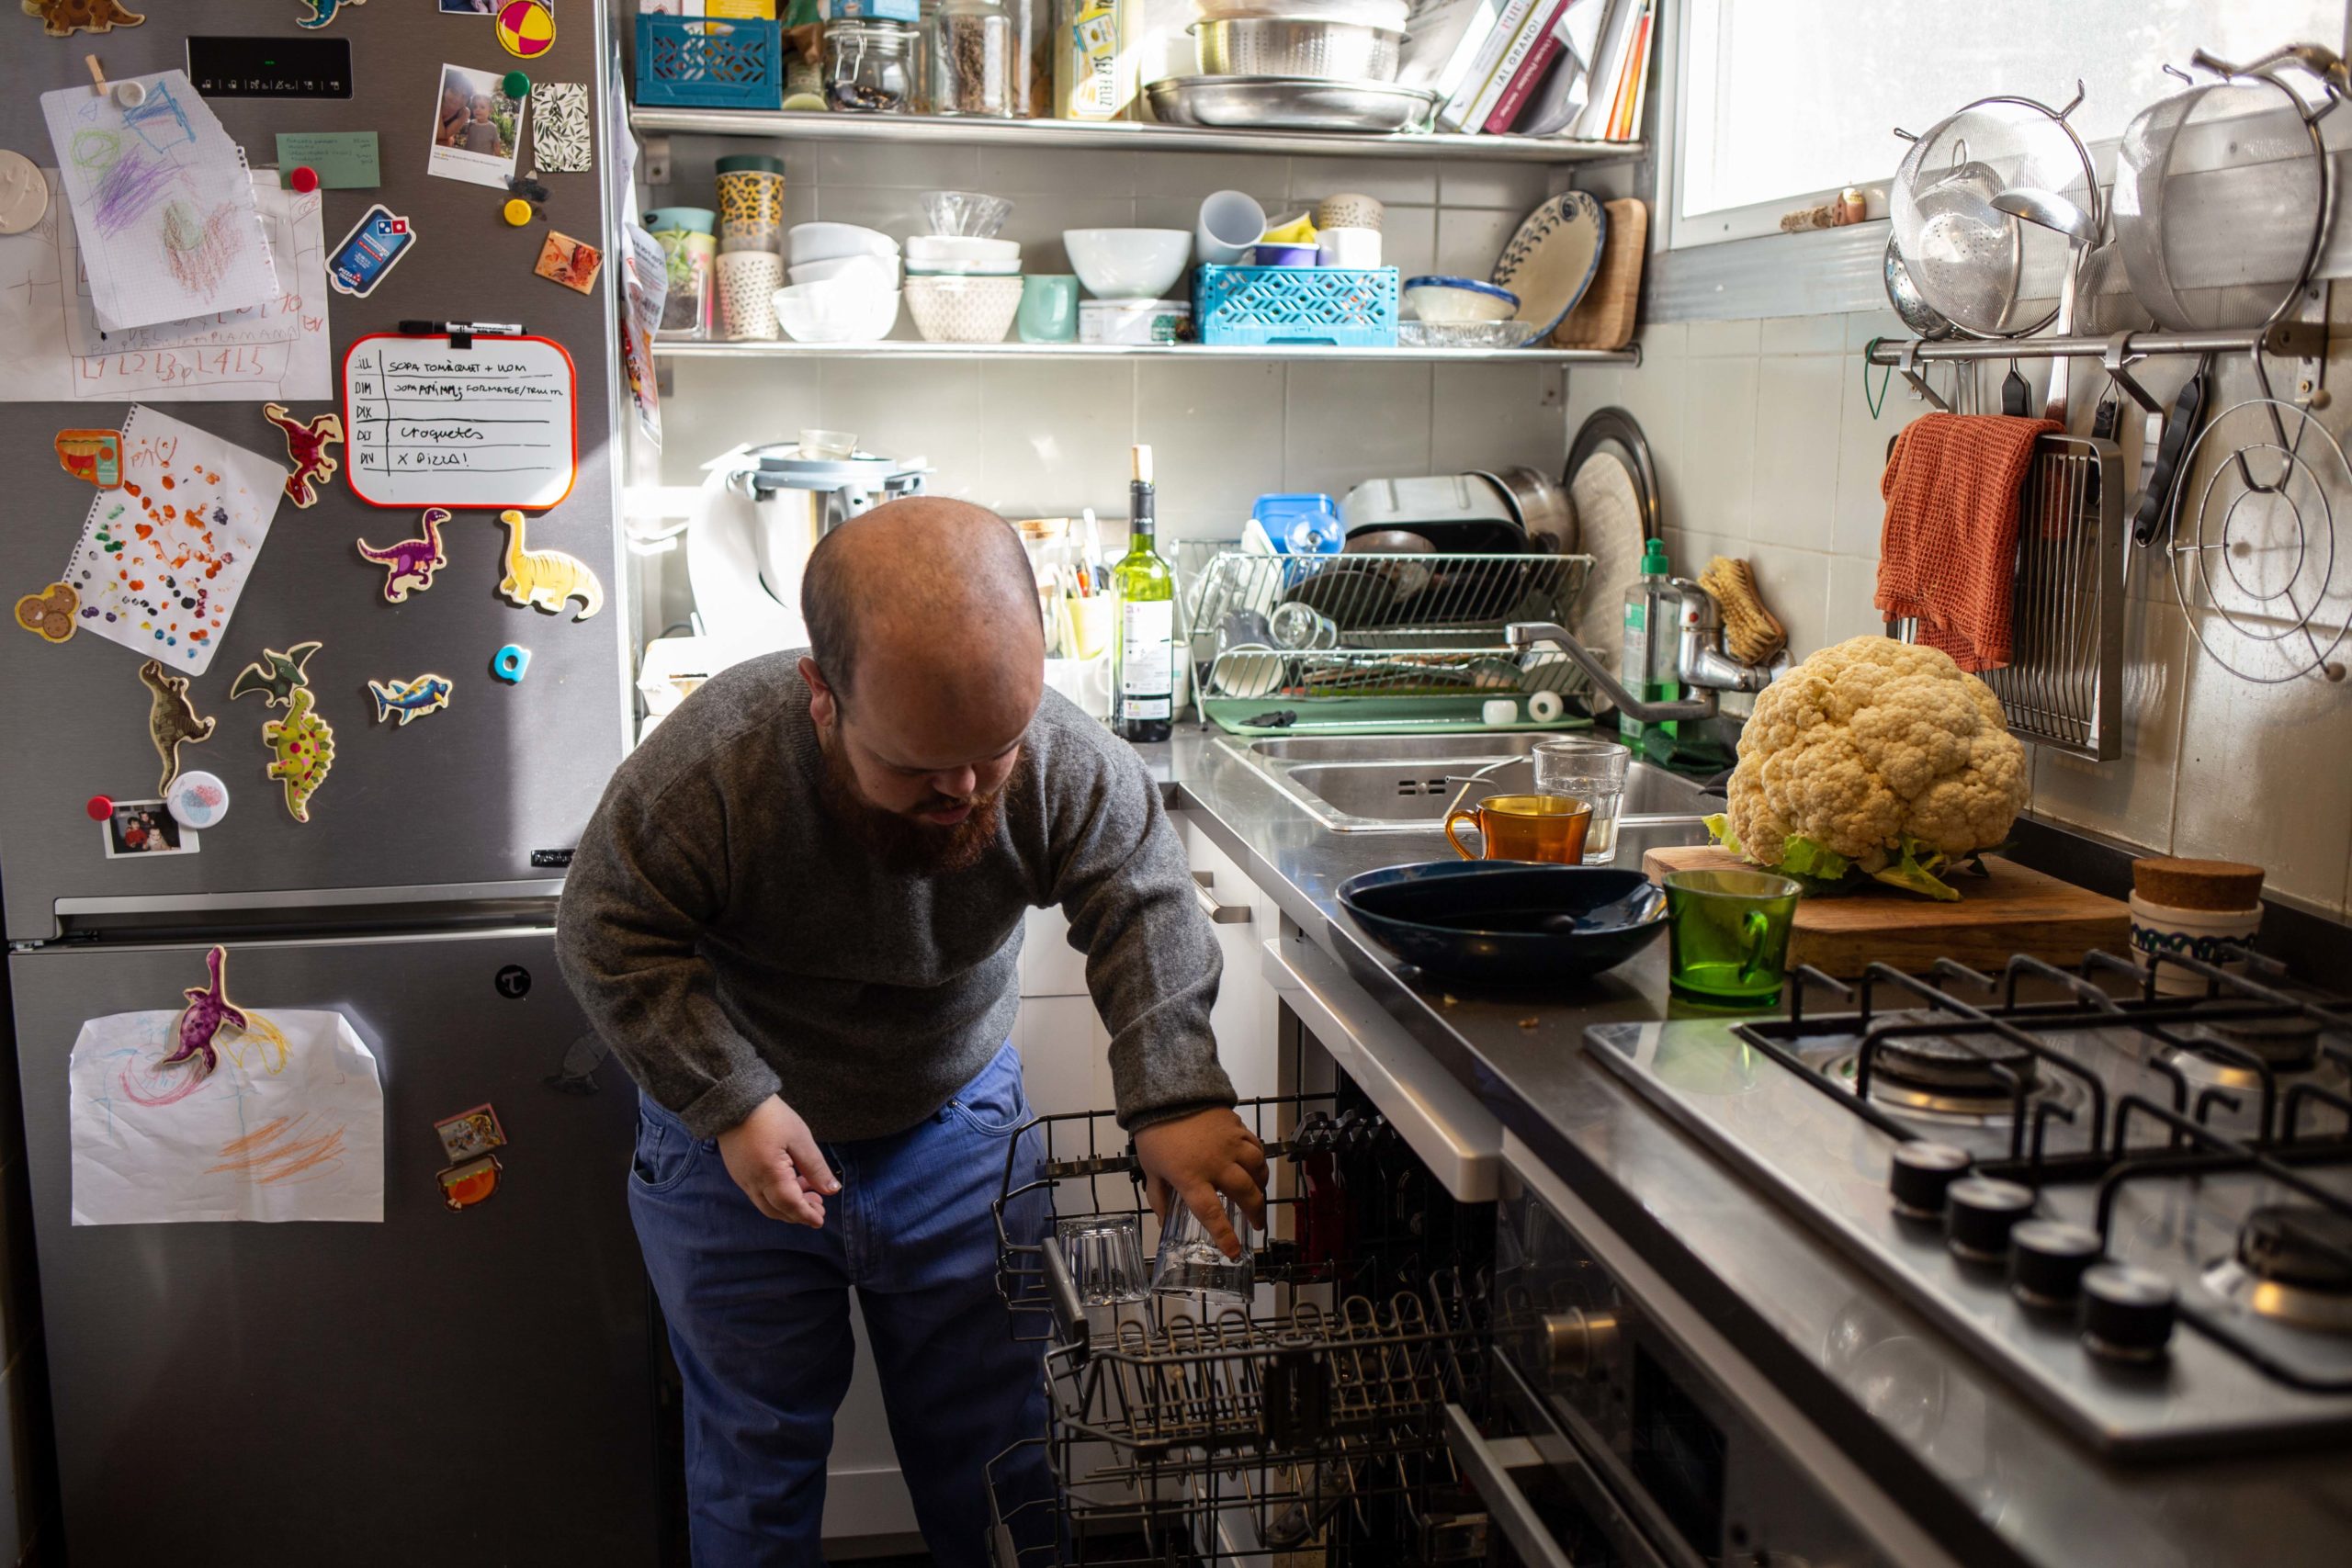 Un noi posa els plats dins del rentavaixelles a la cuina